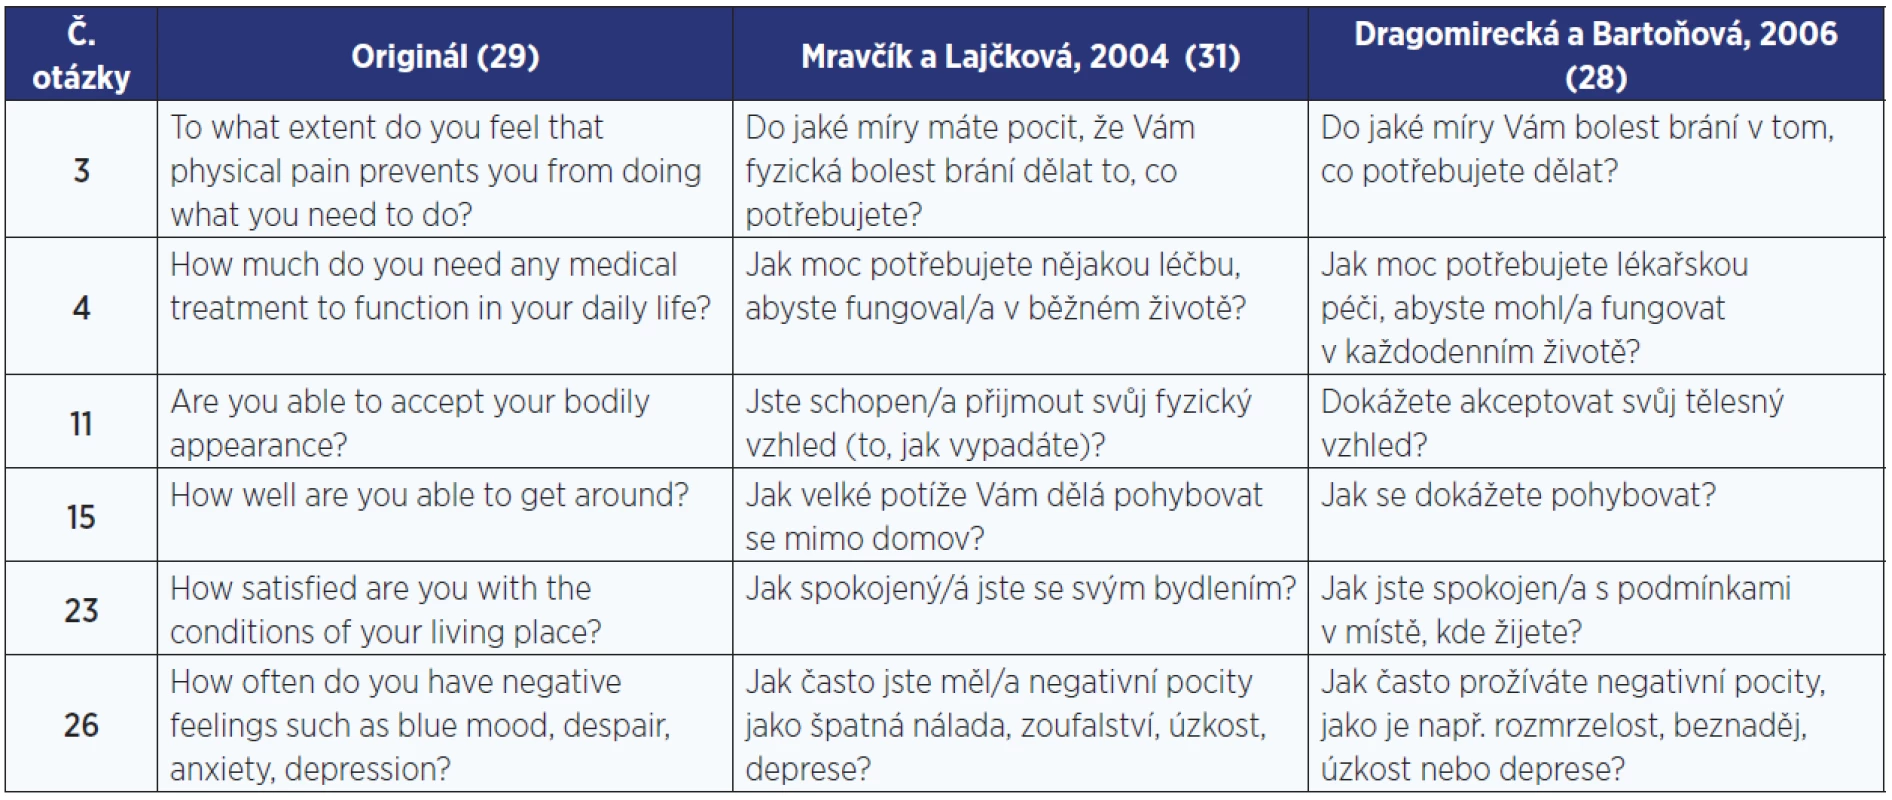 Ukázka porovnání dvou českých překladů nástroje WHOQOL-BREF (28, 31)